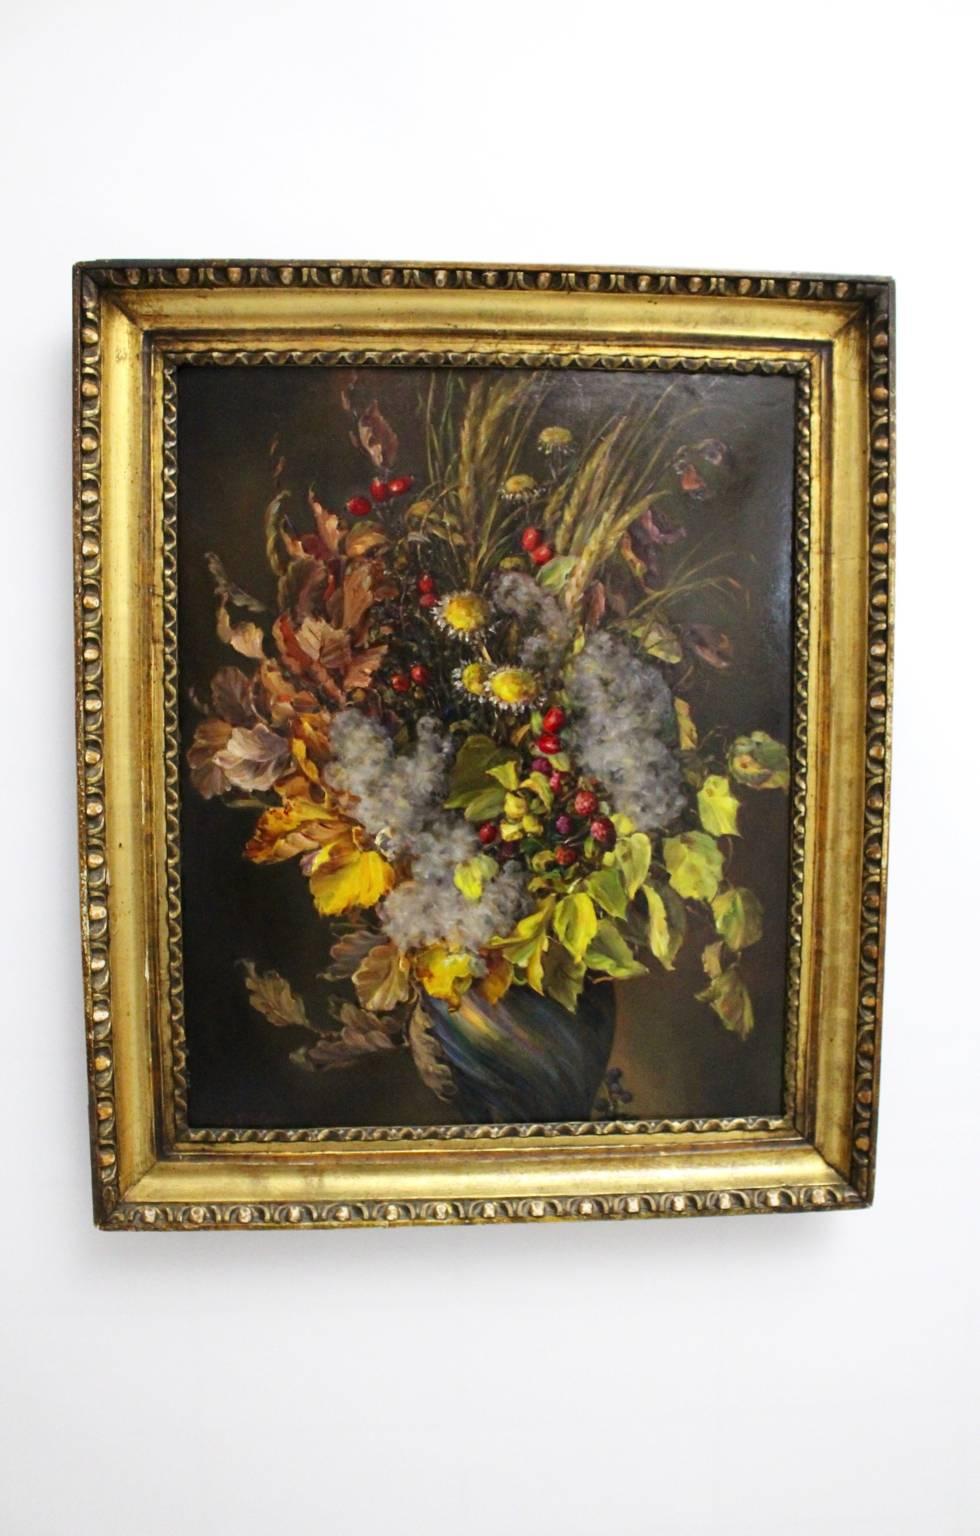 Huile sur carton Art déco d'Emil Fiala (1869-1960) avec le motif
 Bouquet de feuilles d'automne signé, 1930.
 Emil Fiala a parfaitement compris comment transmettre l'ambiance de l'automne. Il a participé à de nombreuses expositions et a été membre